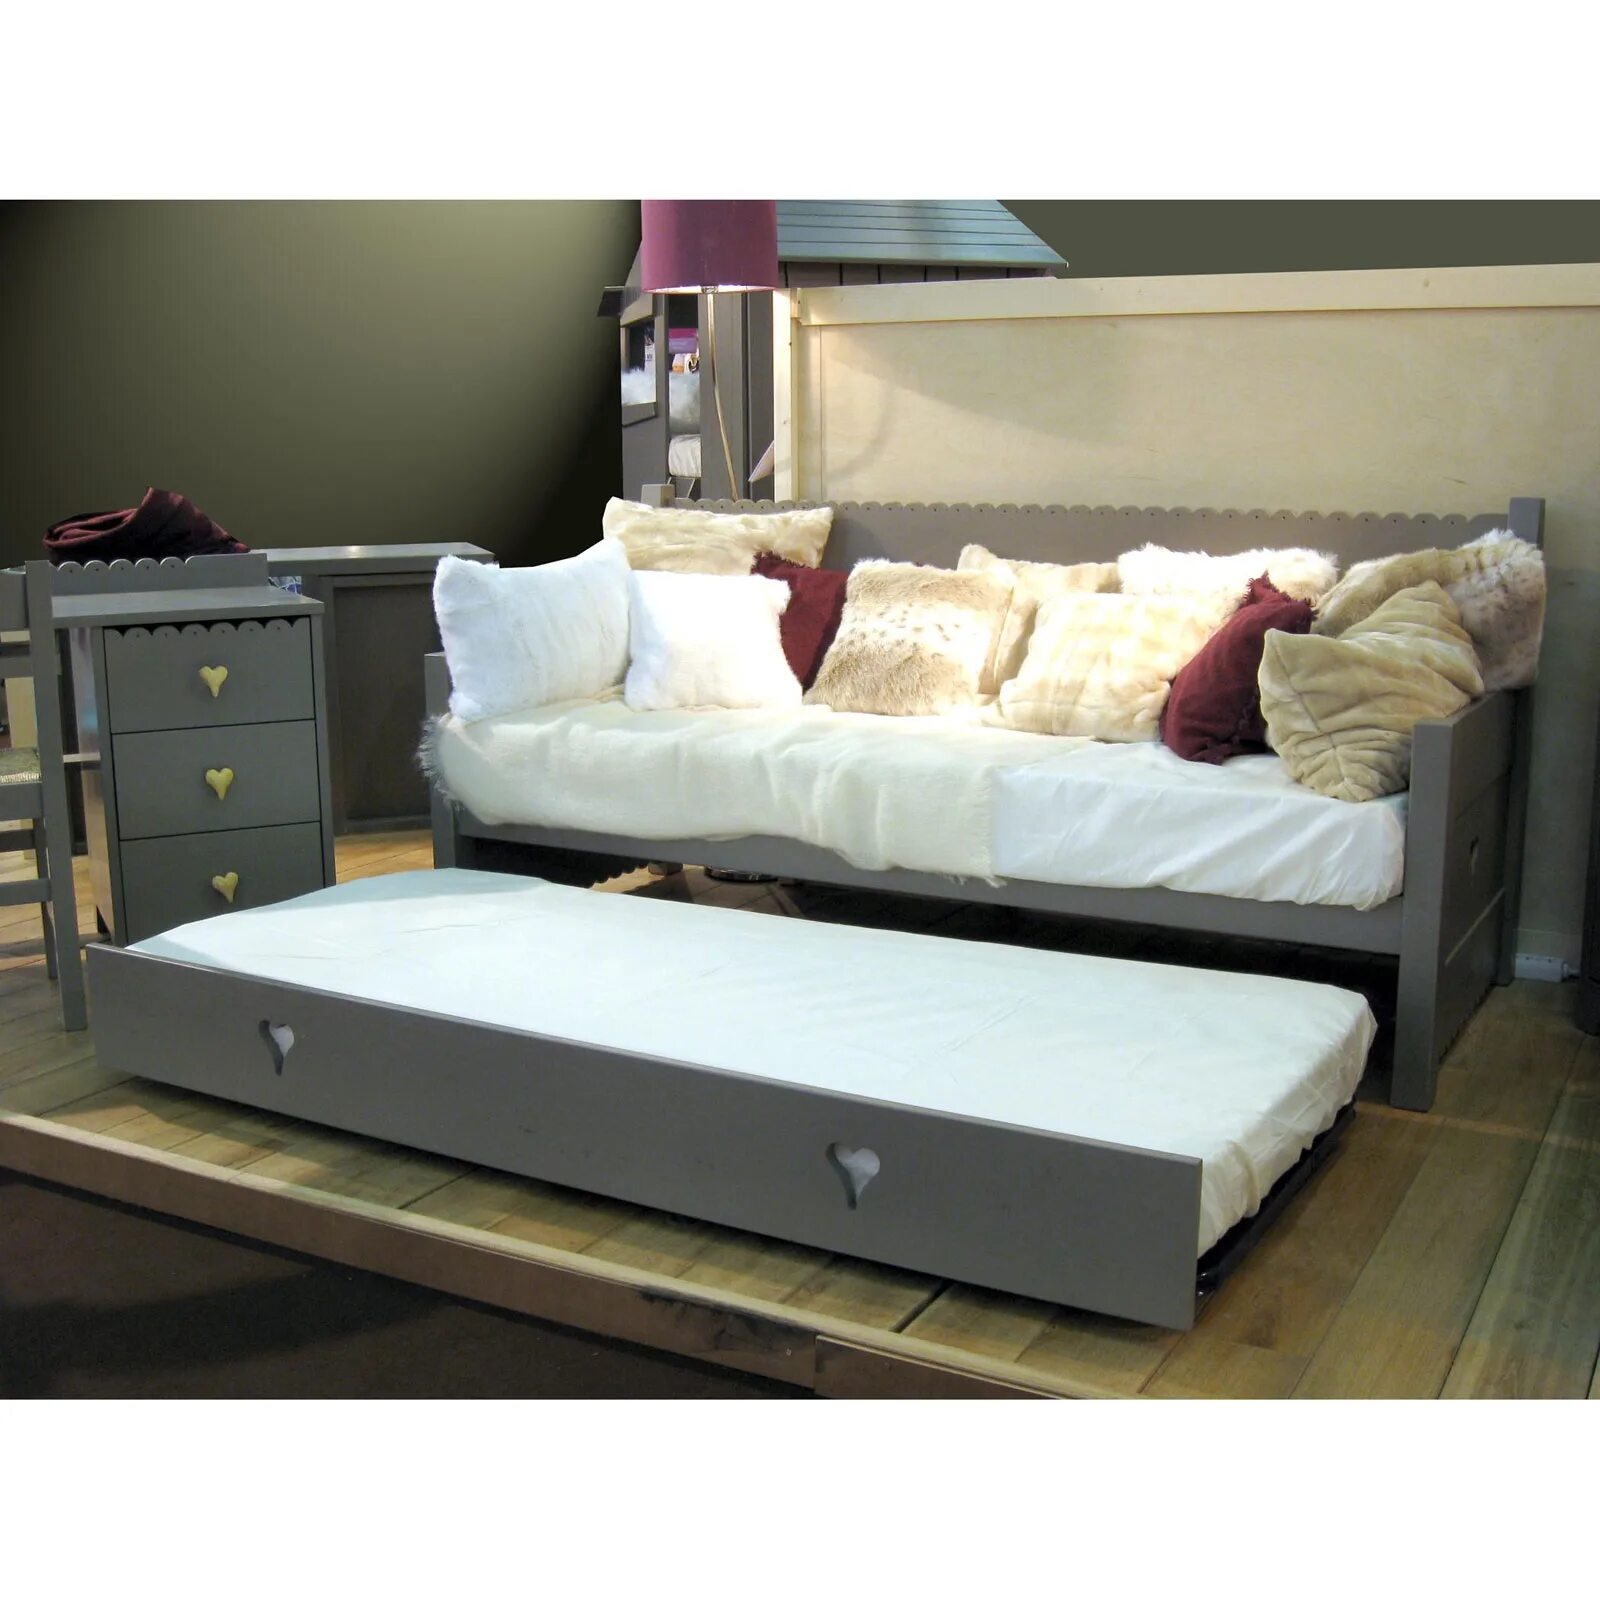 Кровати с дополнительным выдвижным местом. Ивиса 2-82 кровать с выдвижным спальным местом. Диван кровать с выдвижной кроватью. Кушетка с выдвижной кроватью. Кровать с выкатным спальным местом.